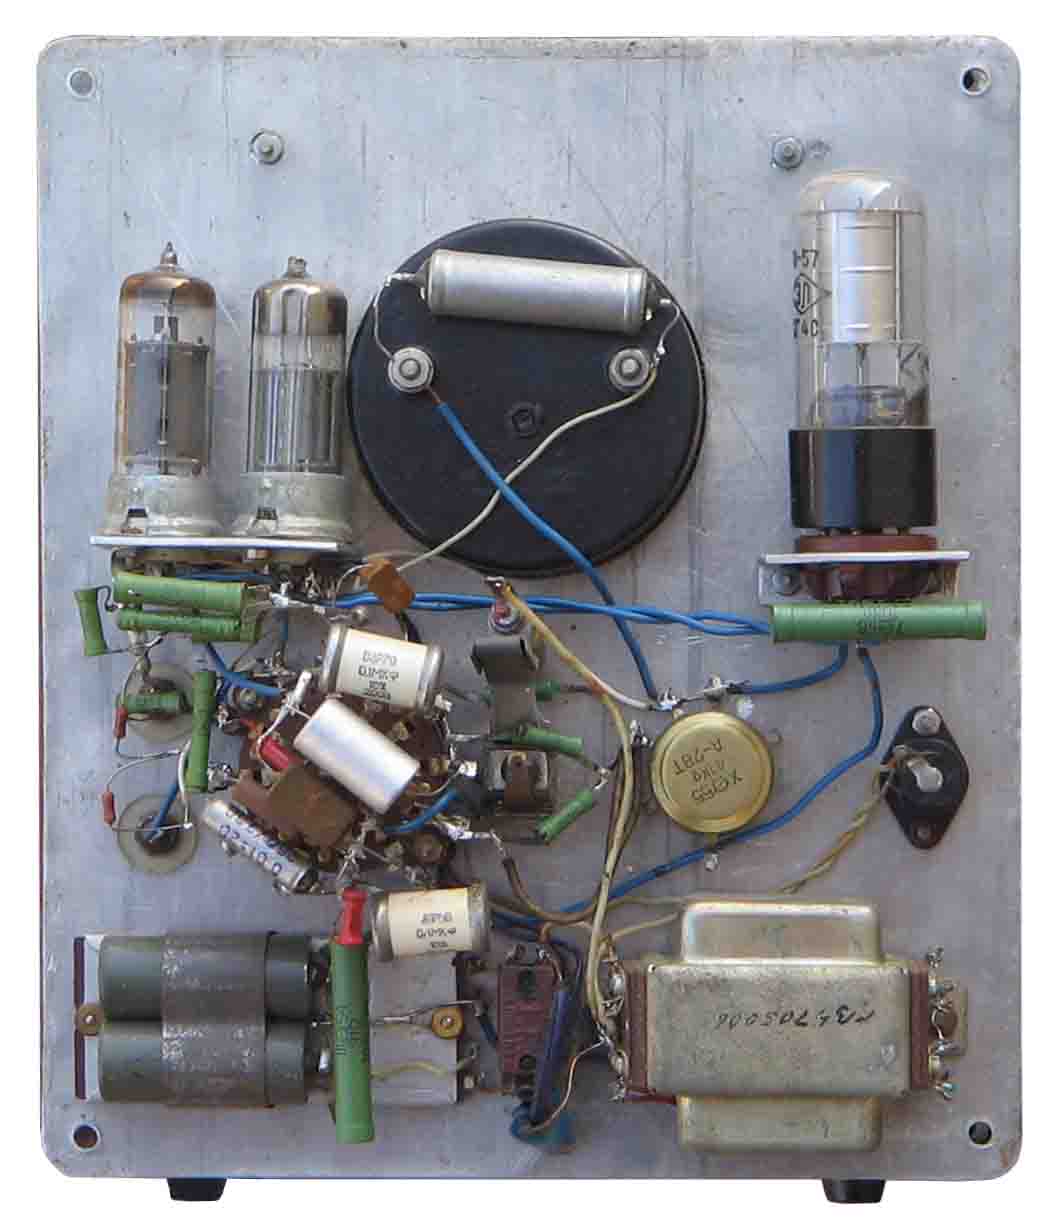 Прибор для измерения ёмкости конденсаторов. Сделан по описанию в журнале "Радио"